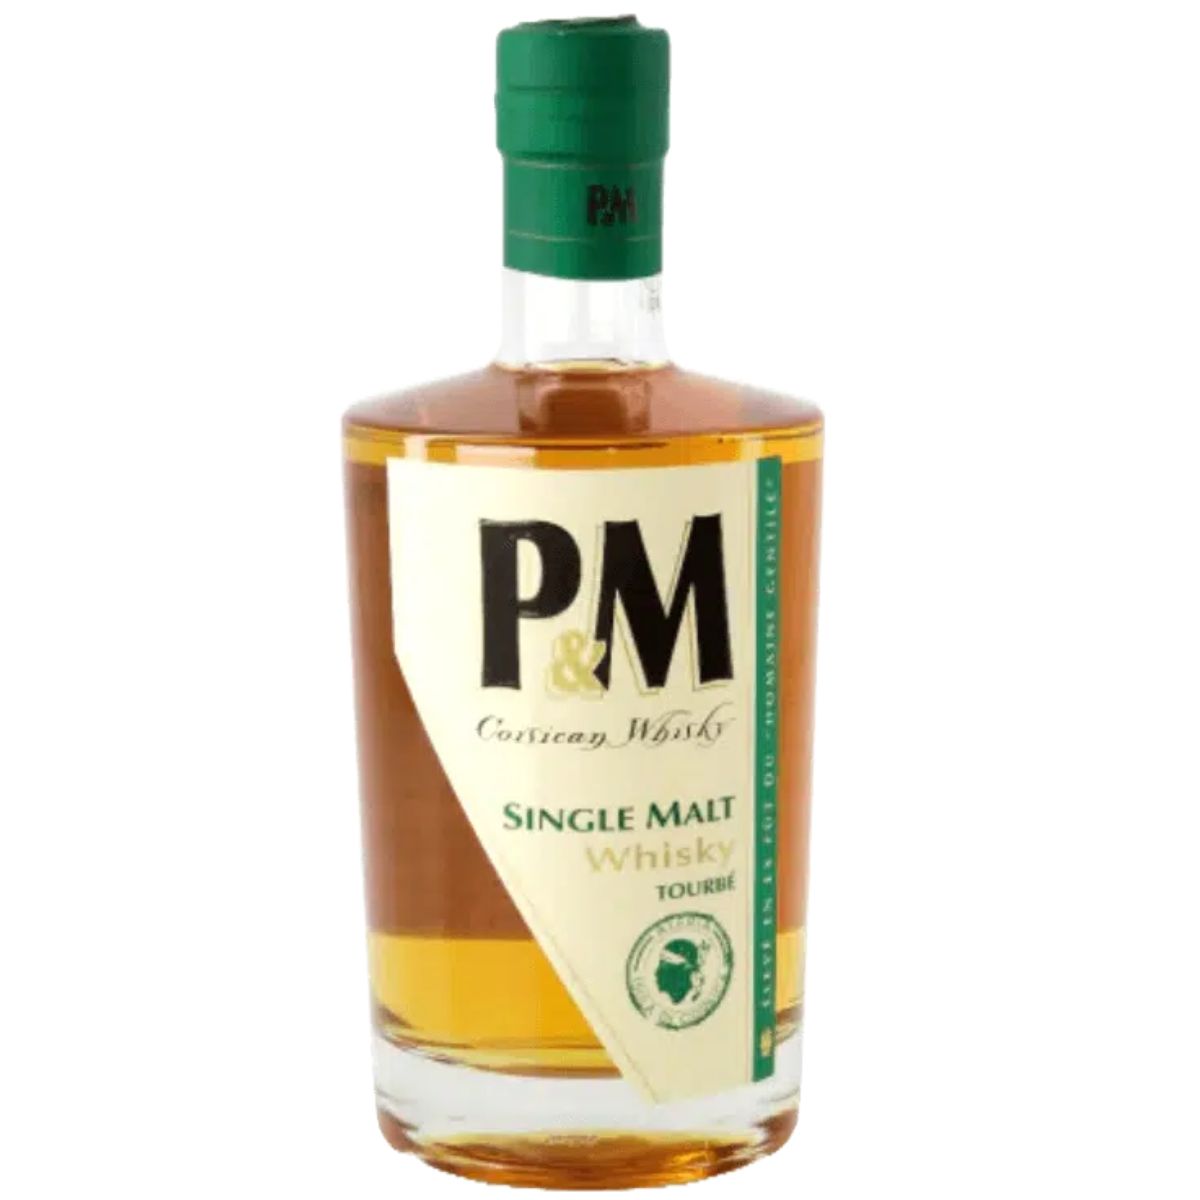 P&M - Single Malt Tourbé